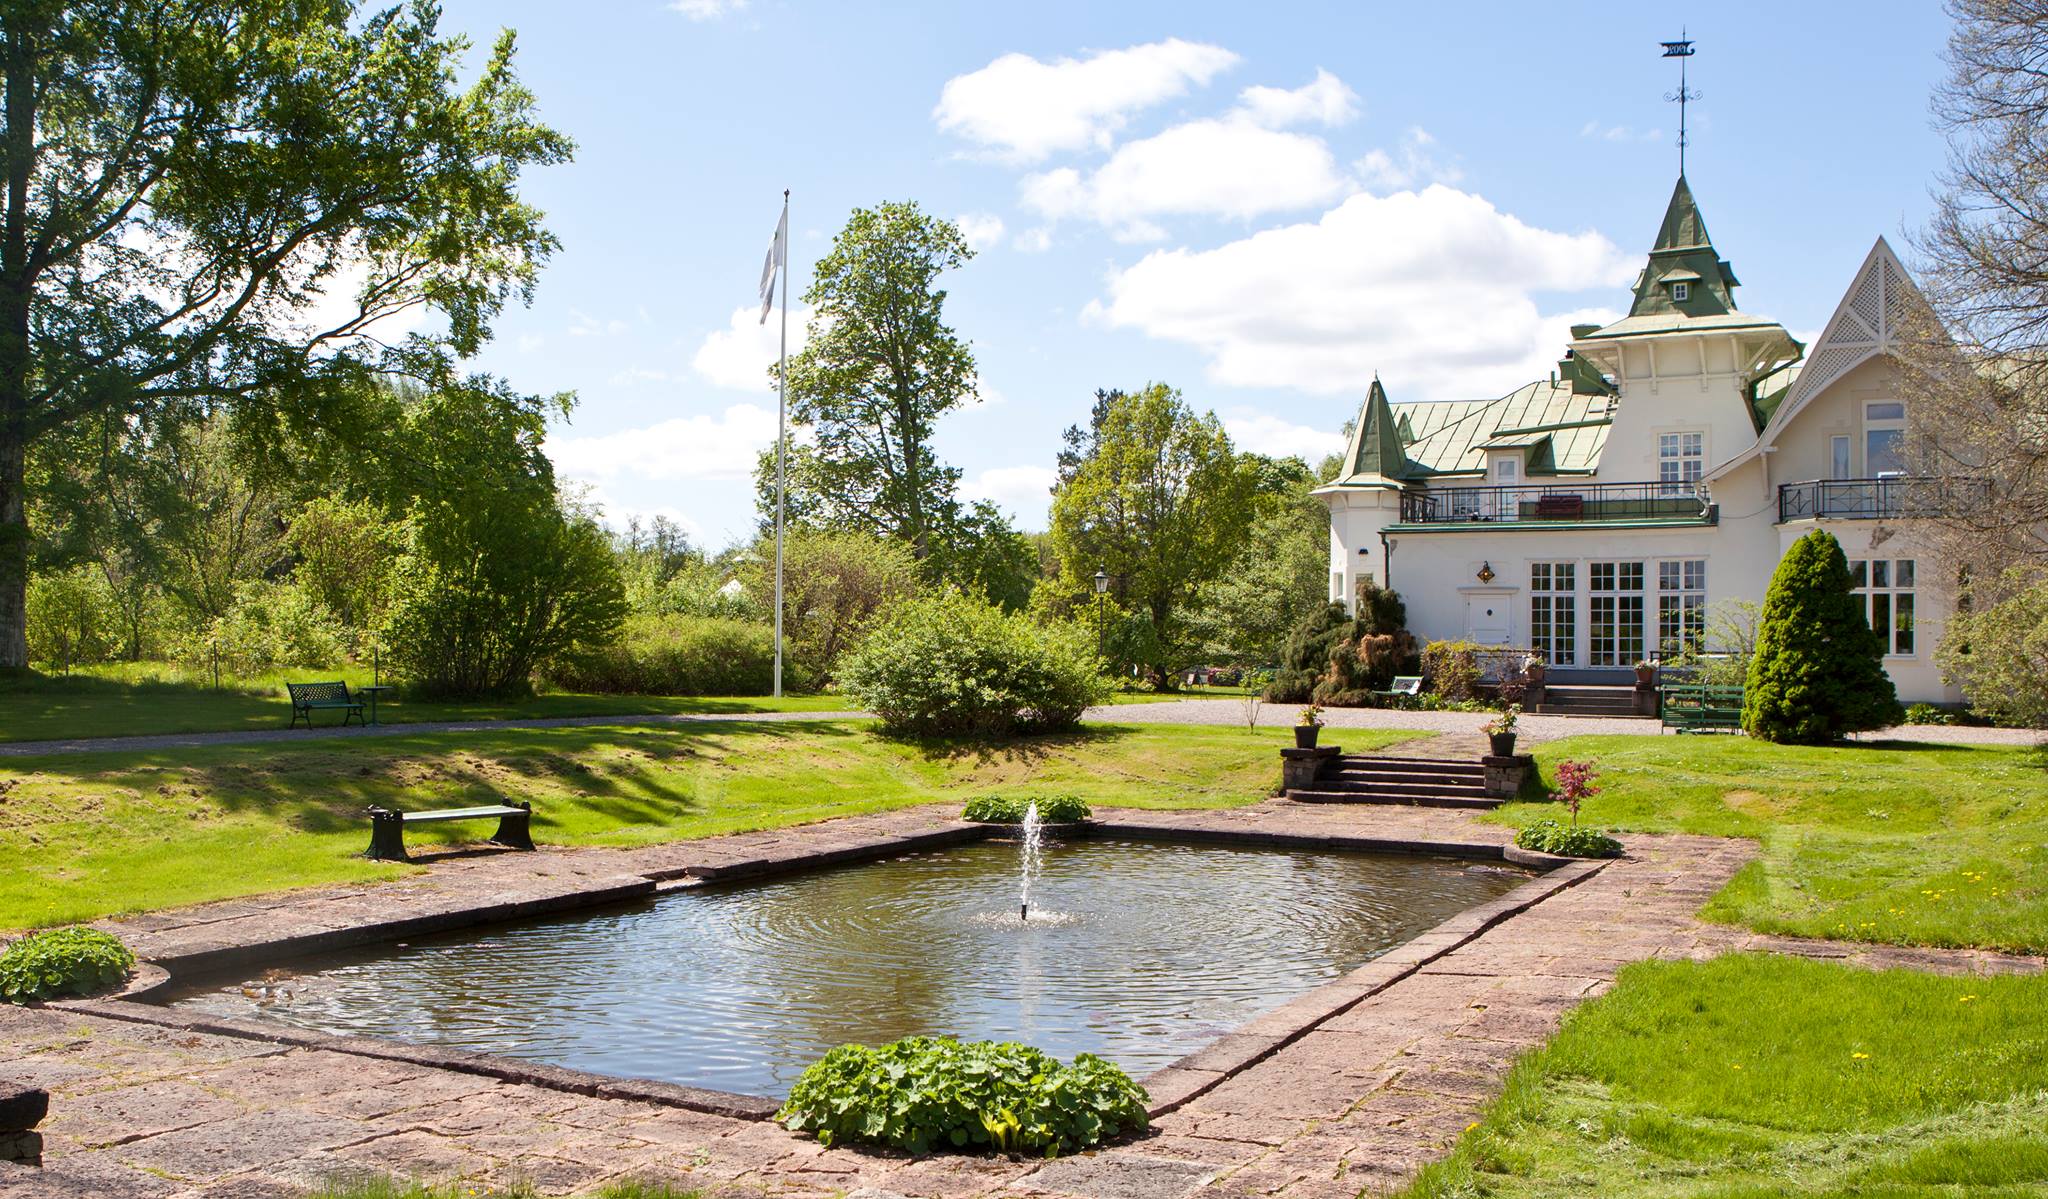 Photo: Facebook Countryside hotels Un des hôtels de la Countyside en Suède qui offre un séjour gratuit aux couples se divorçant dans l'année suivant un séjour dans un hôtel de la chaîne